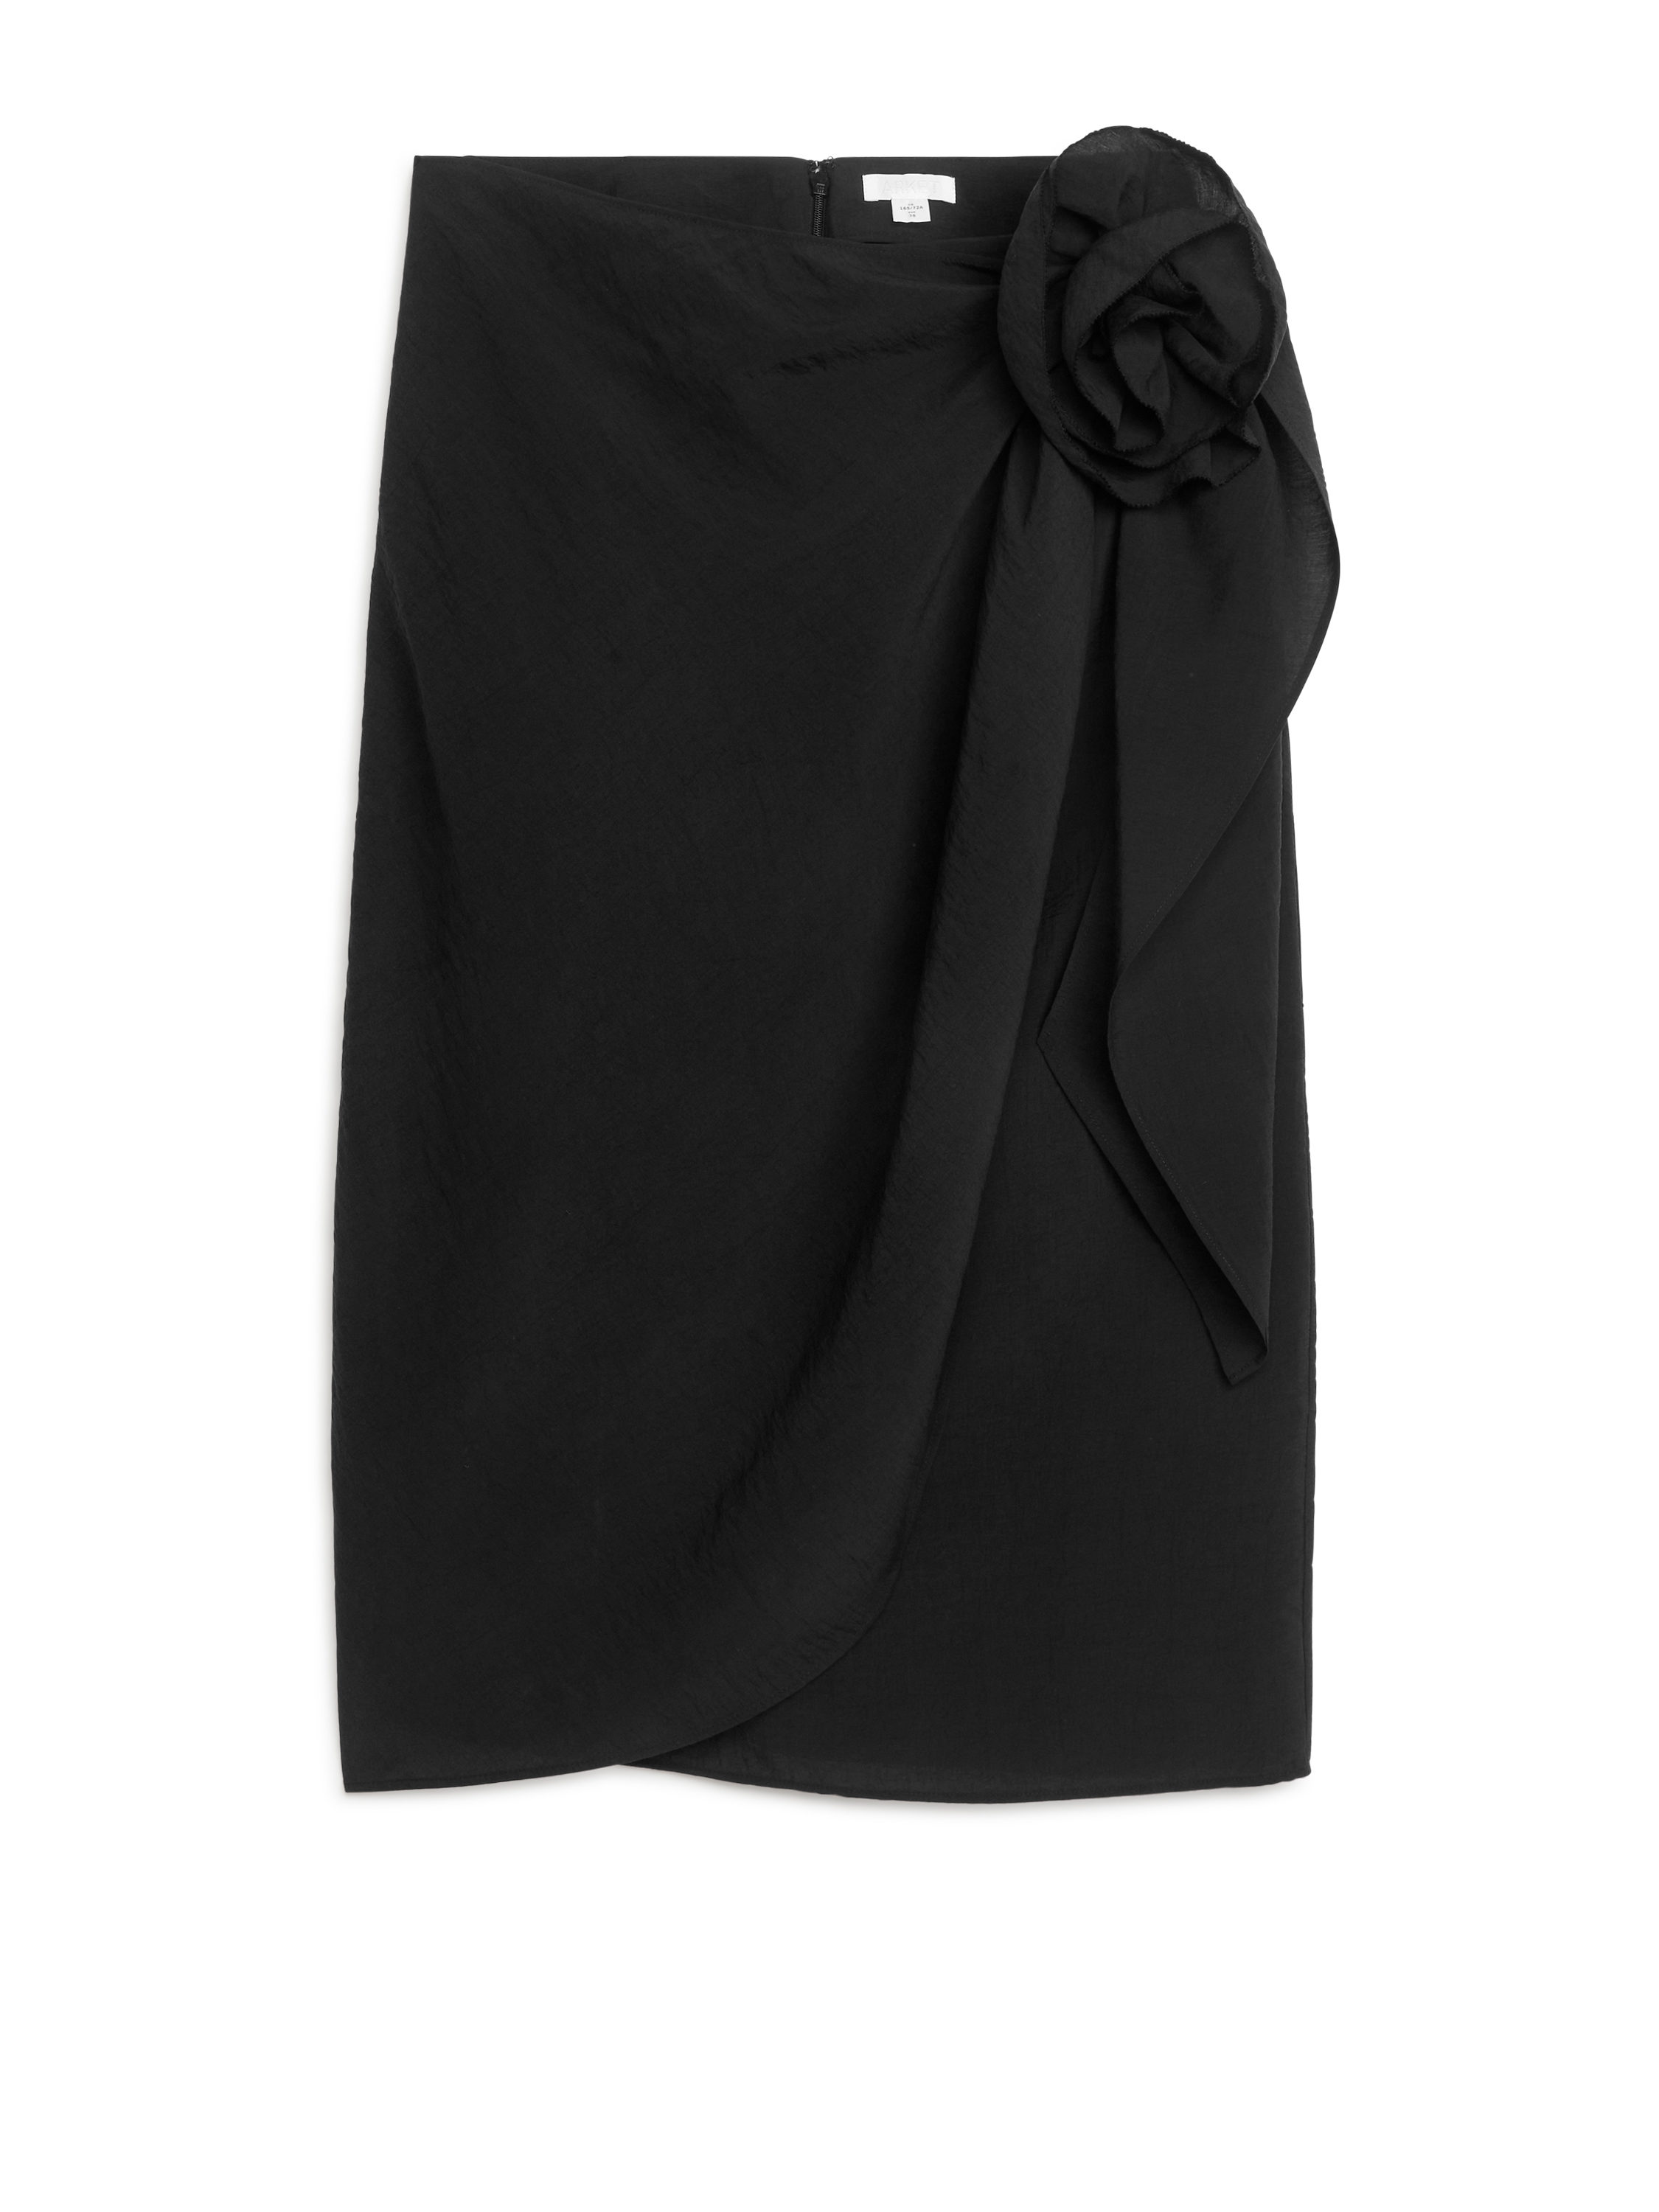 Billede af Arket Slå om-nederdel Med Rosendetalje Sort, Nederdele. Farve: Black I størrelse 38